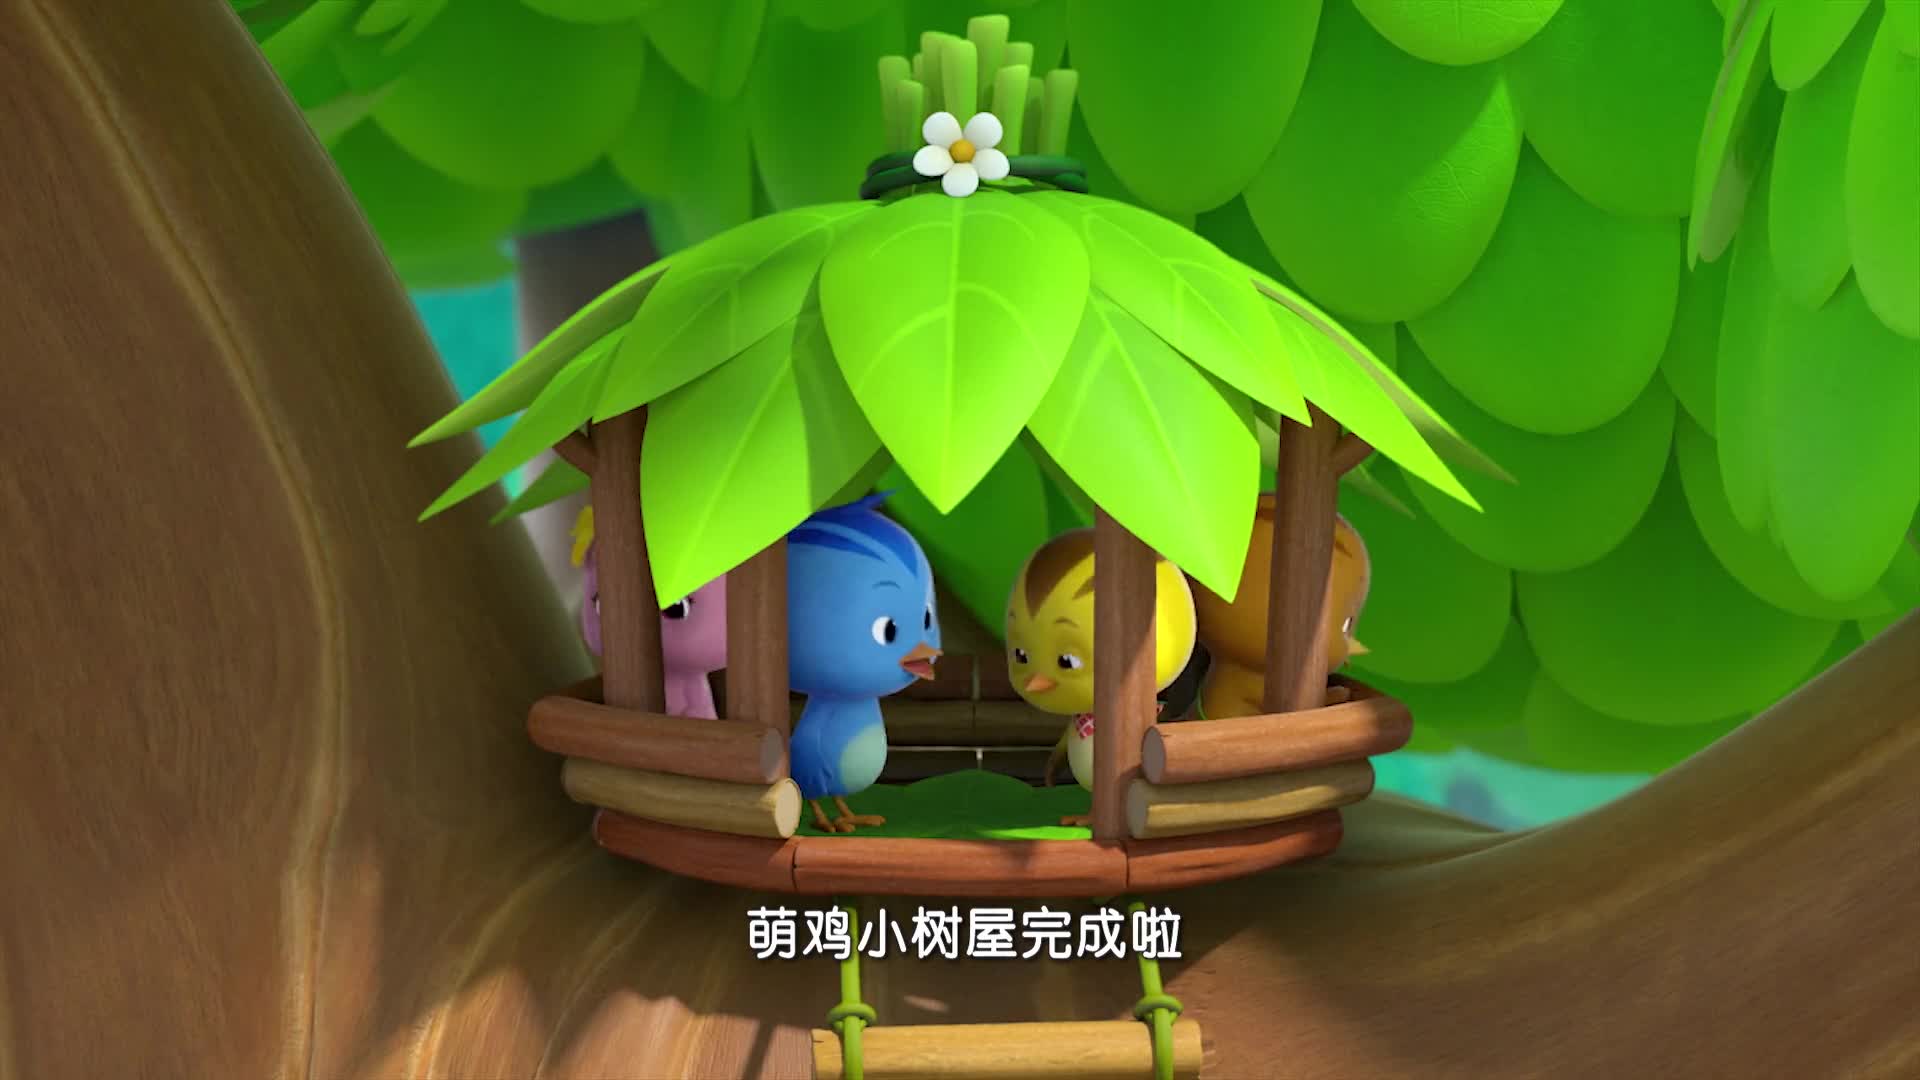 萌鸡小队:萌鸡好可爱,还会做树屋,在树上玩起来了